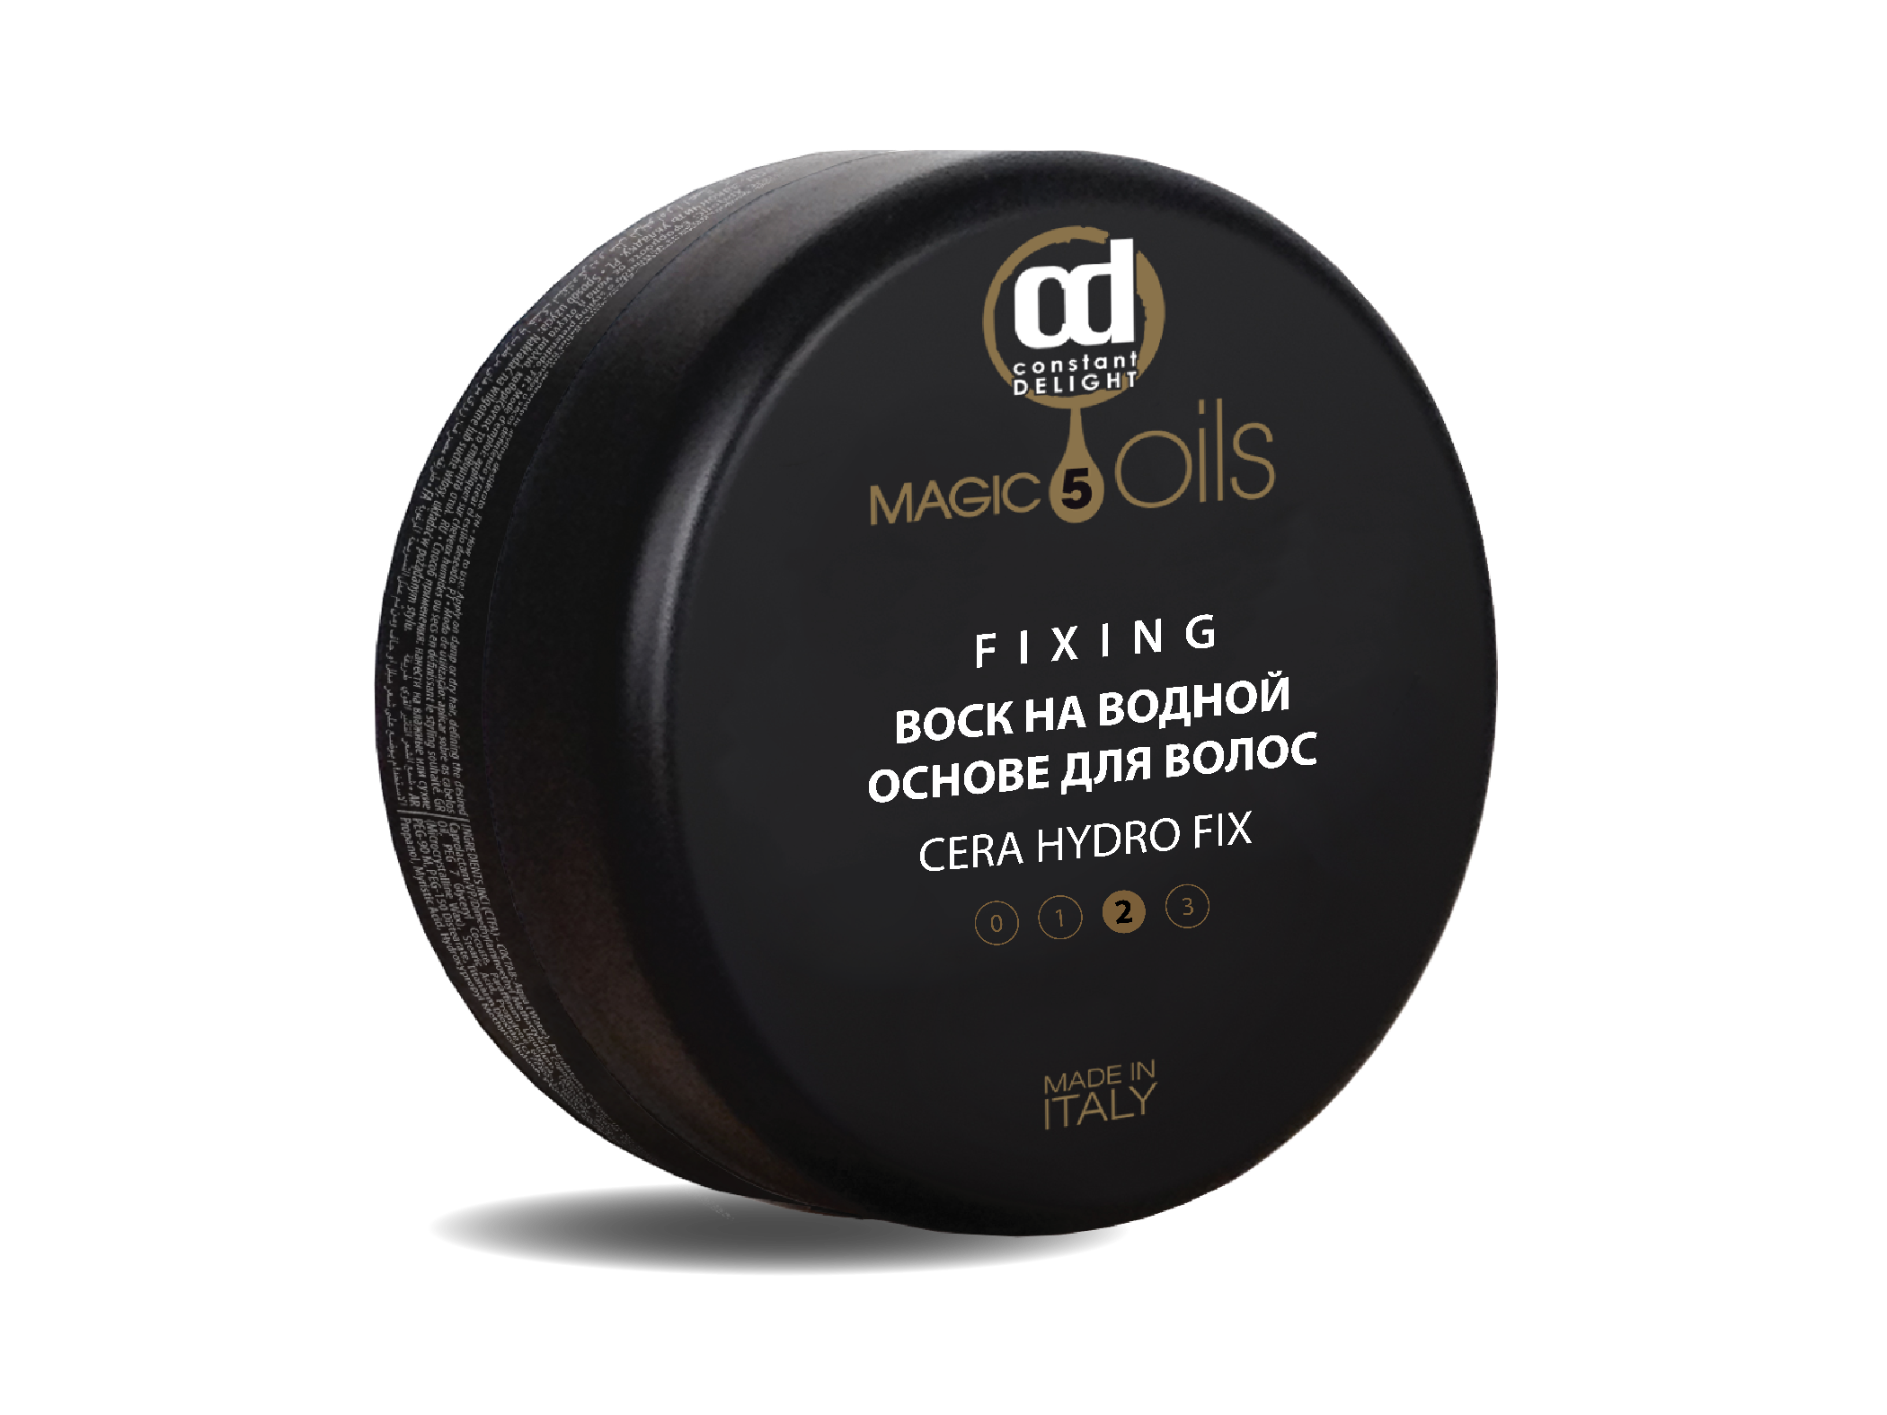 Гель magic. CD глина-воск для моделирования волос 100 мл. Constant Delight 5 Magic Oils fixing воск тянучка. CD воск на водной основе 5 масел 100мл. Матовый воск для волос constant Delight.